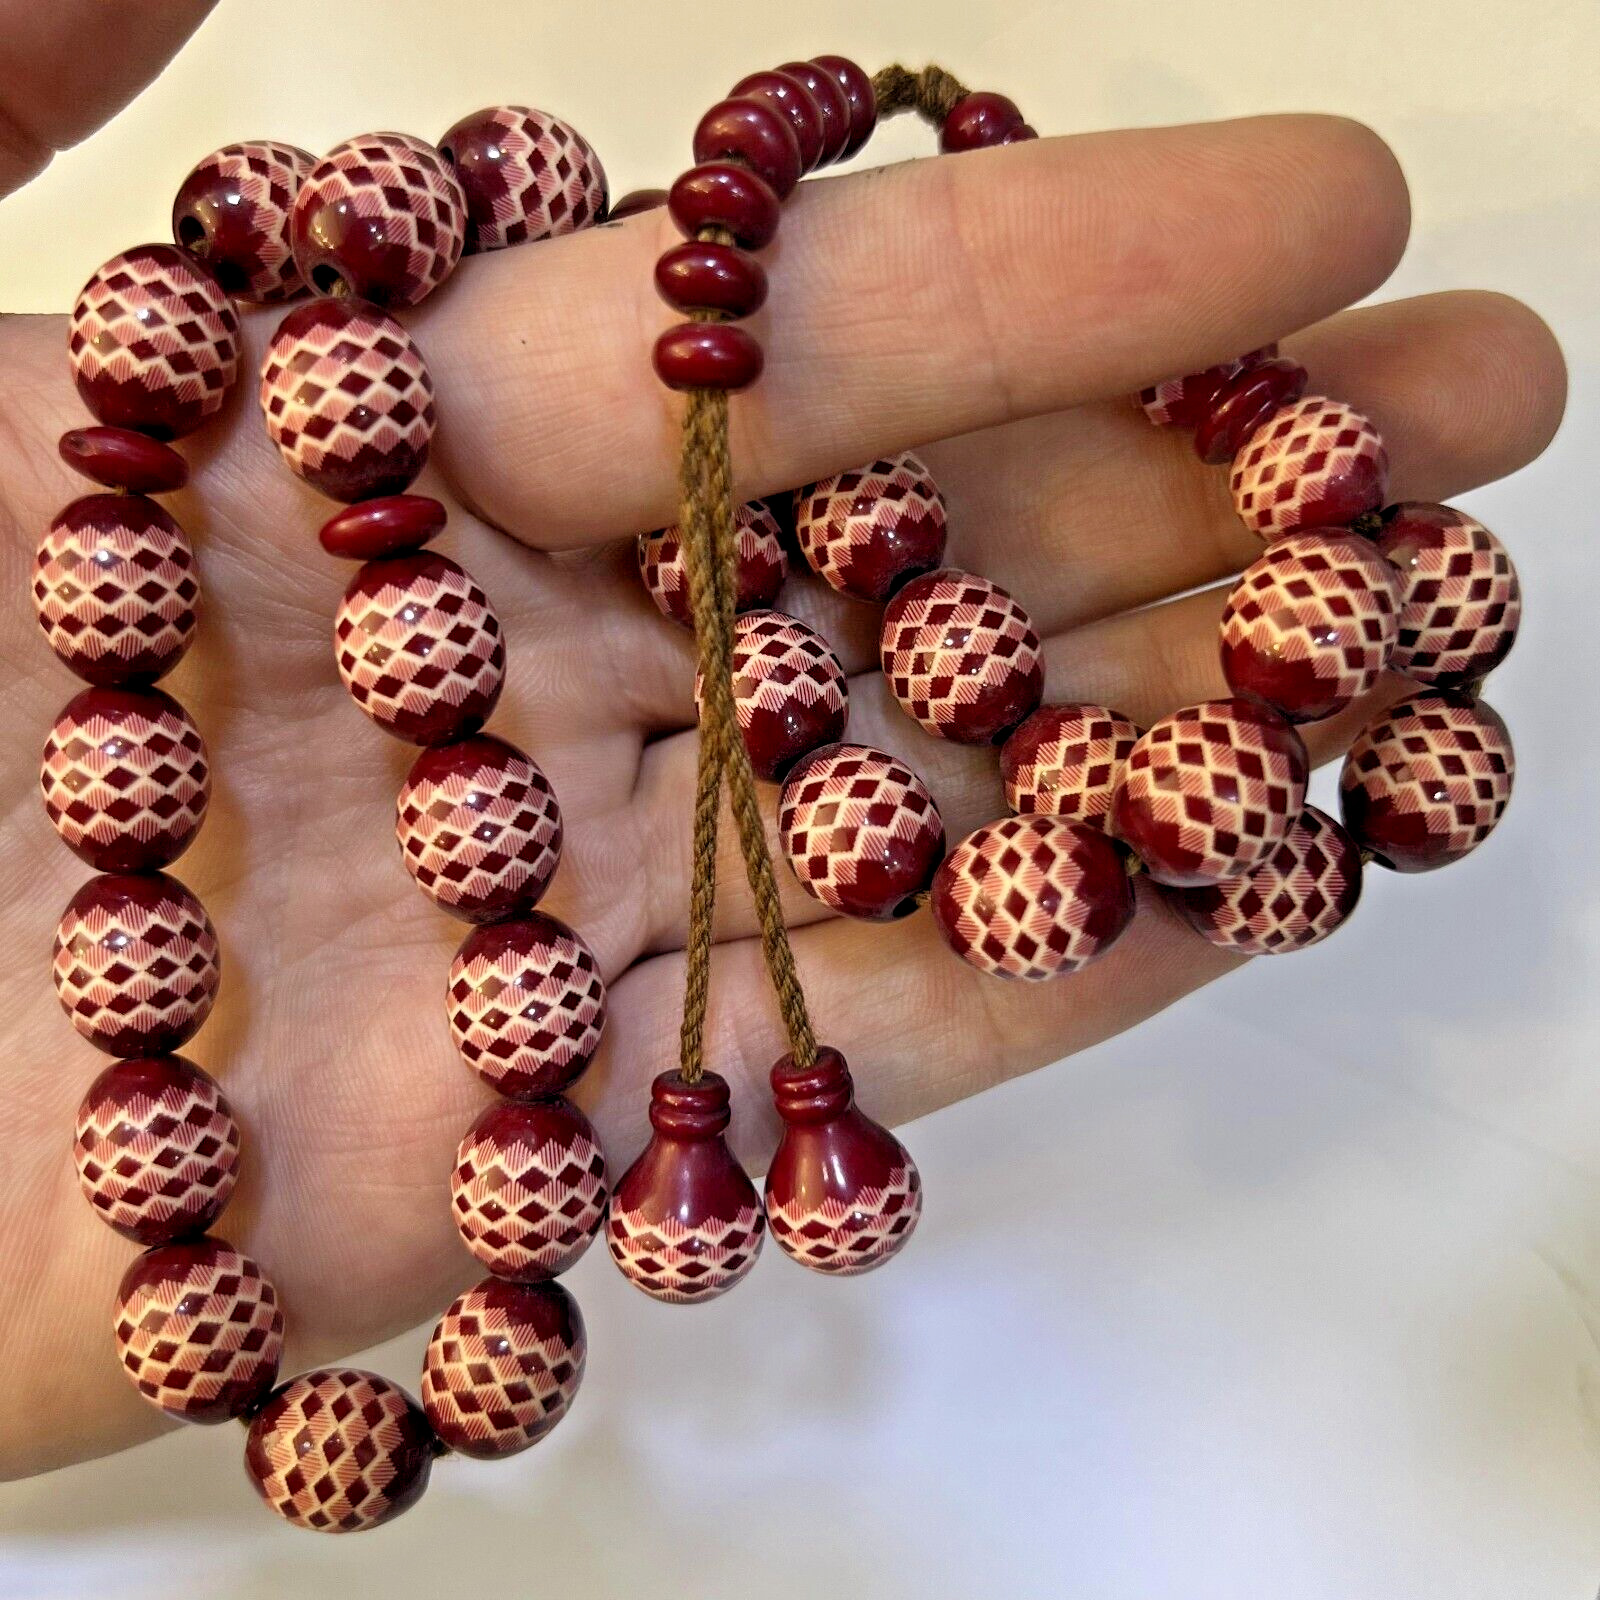 Prayer 33 Beads Islamic Rosary Misbaha Pray HANDMADE New Burgundy Beautiful Gift